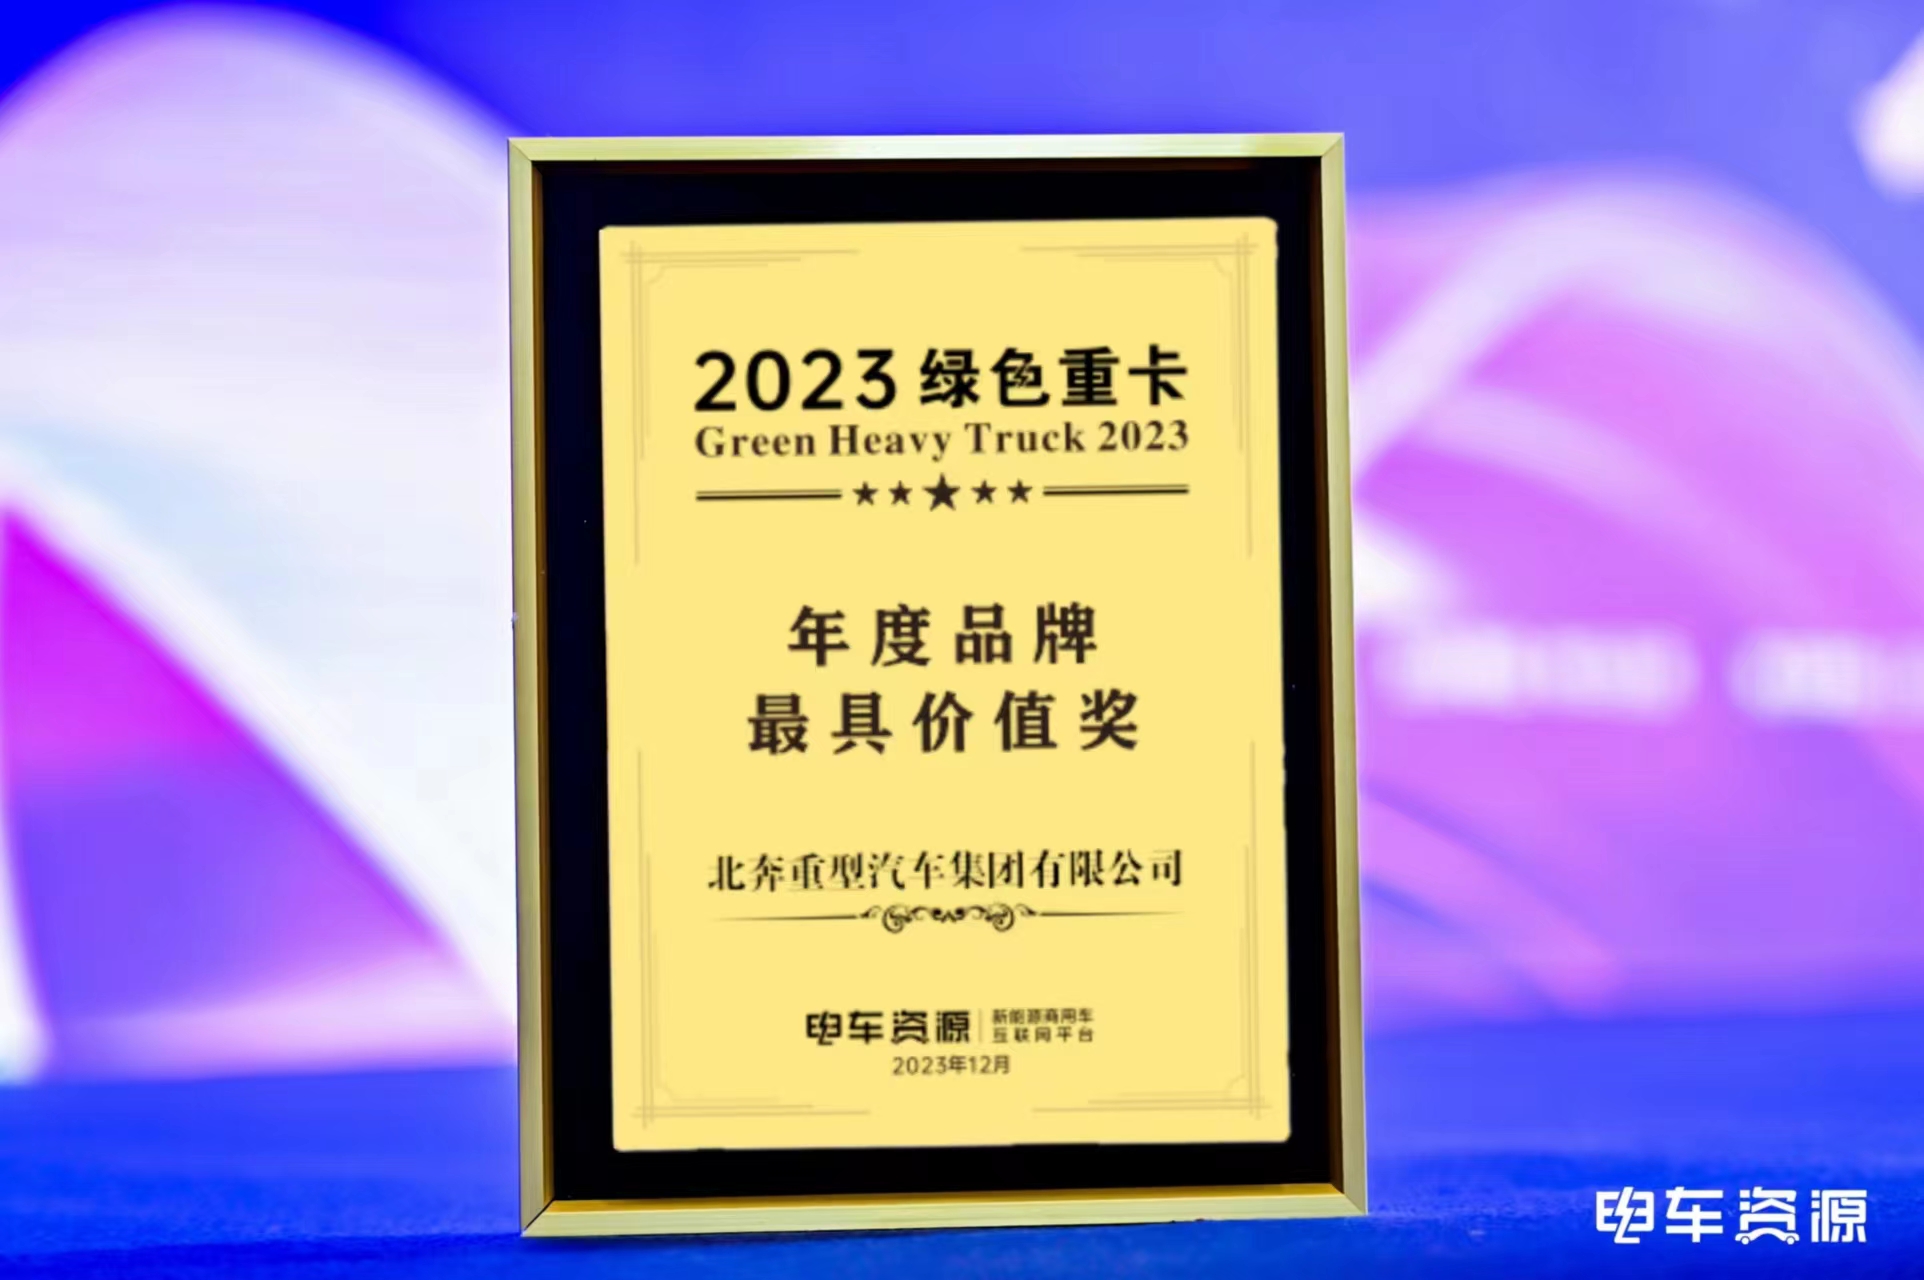 【喜报】北奔重卡荣获2023绿色重卡“年度品牌最具价值奖”“年度技术与产品创新成果奖”